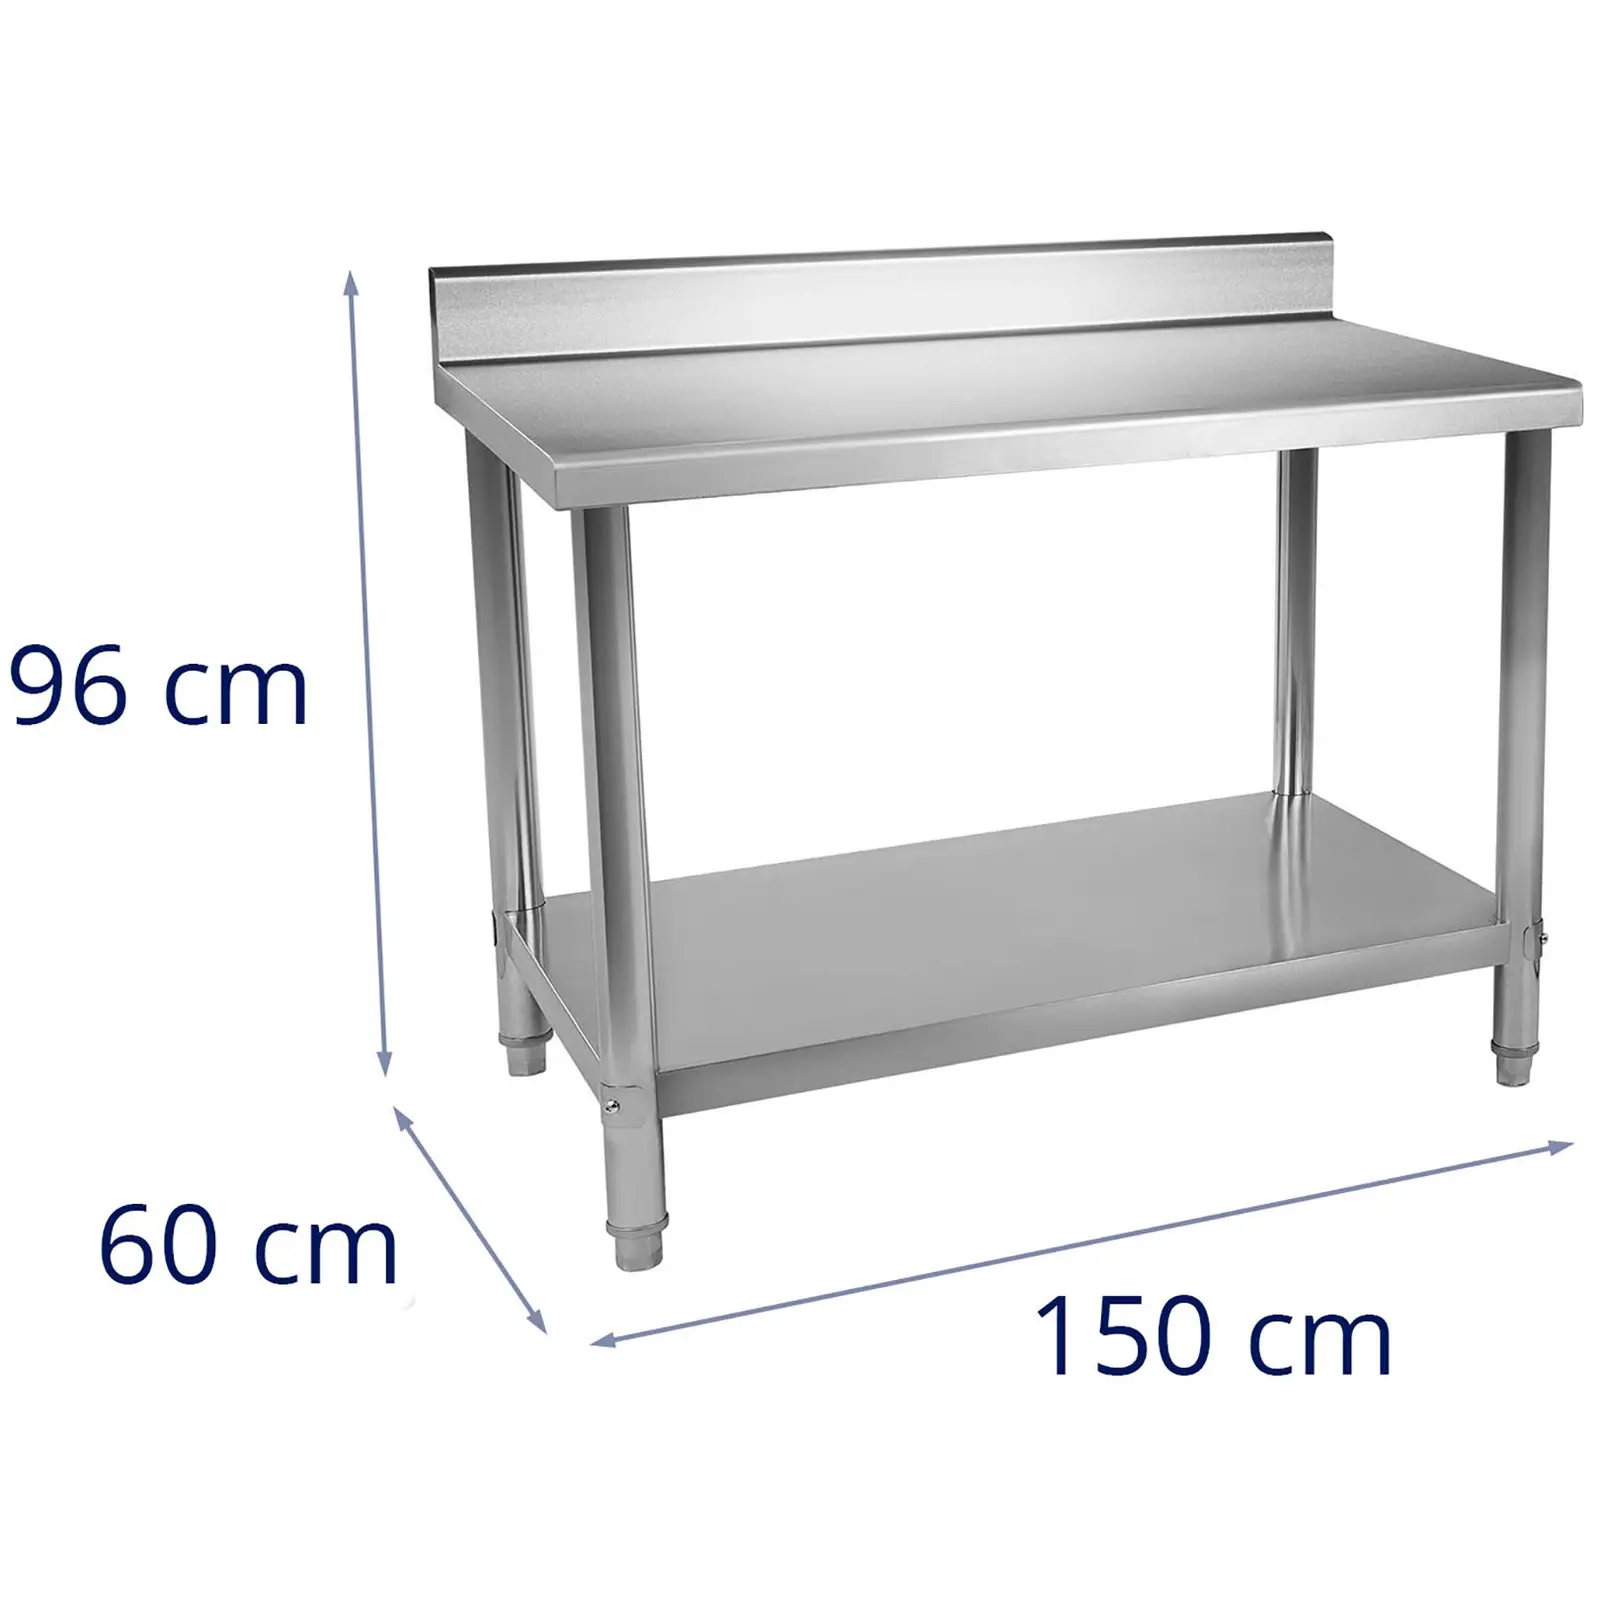 Table de travail inox - 150 x 60 cm - Avec dosseret - Capacité de charge de 159 kg